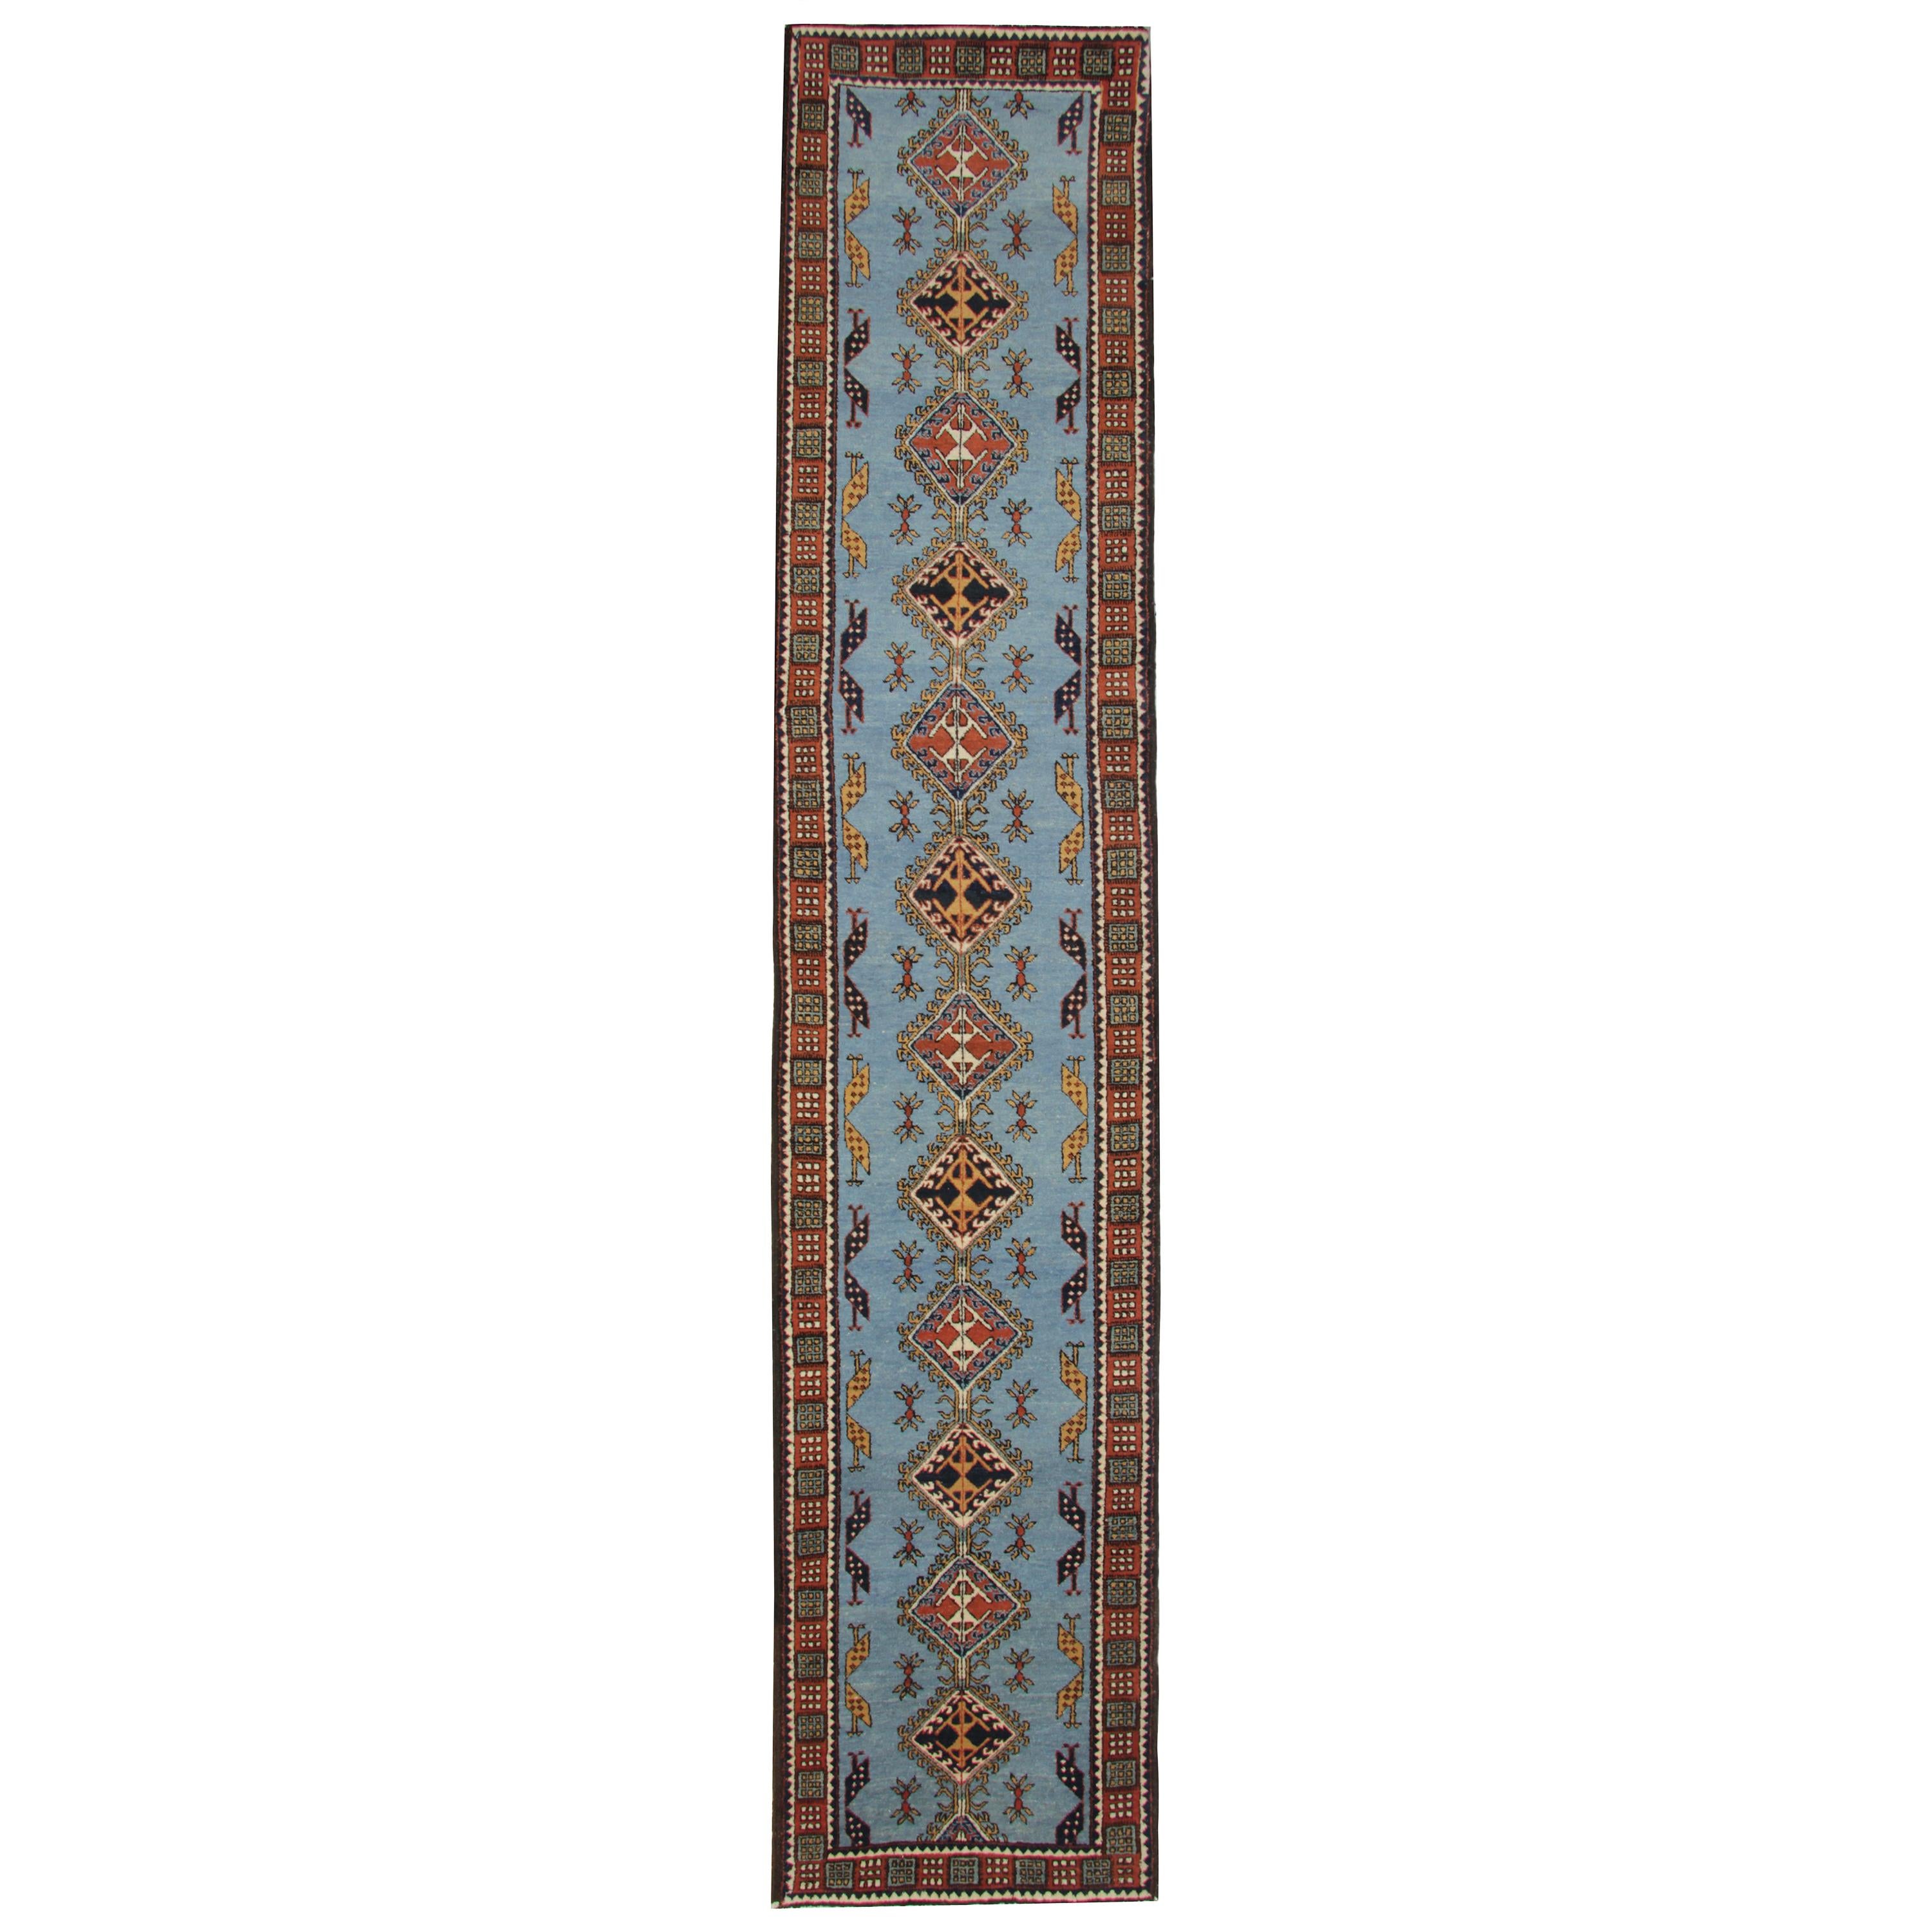 Handgefertigte Teppiche Blau Läufer und Teppiche Orientalische Teppiche